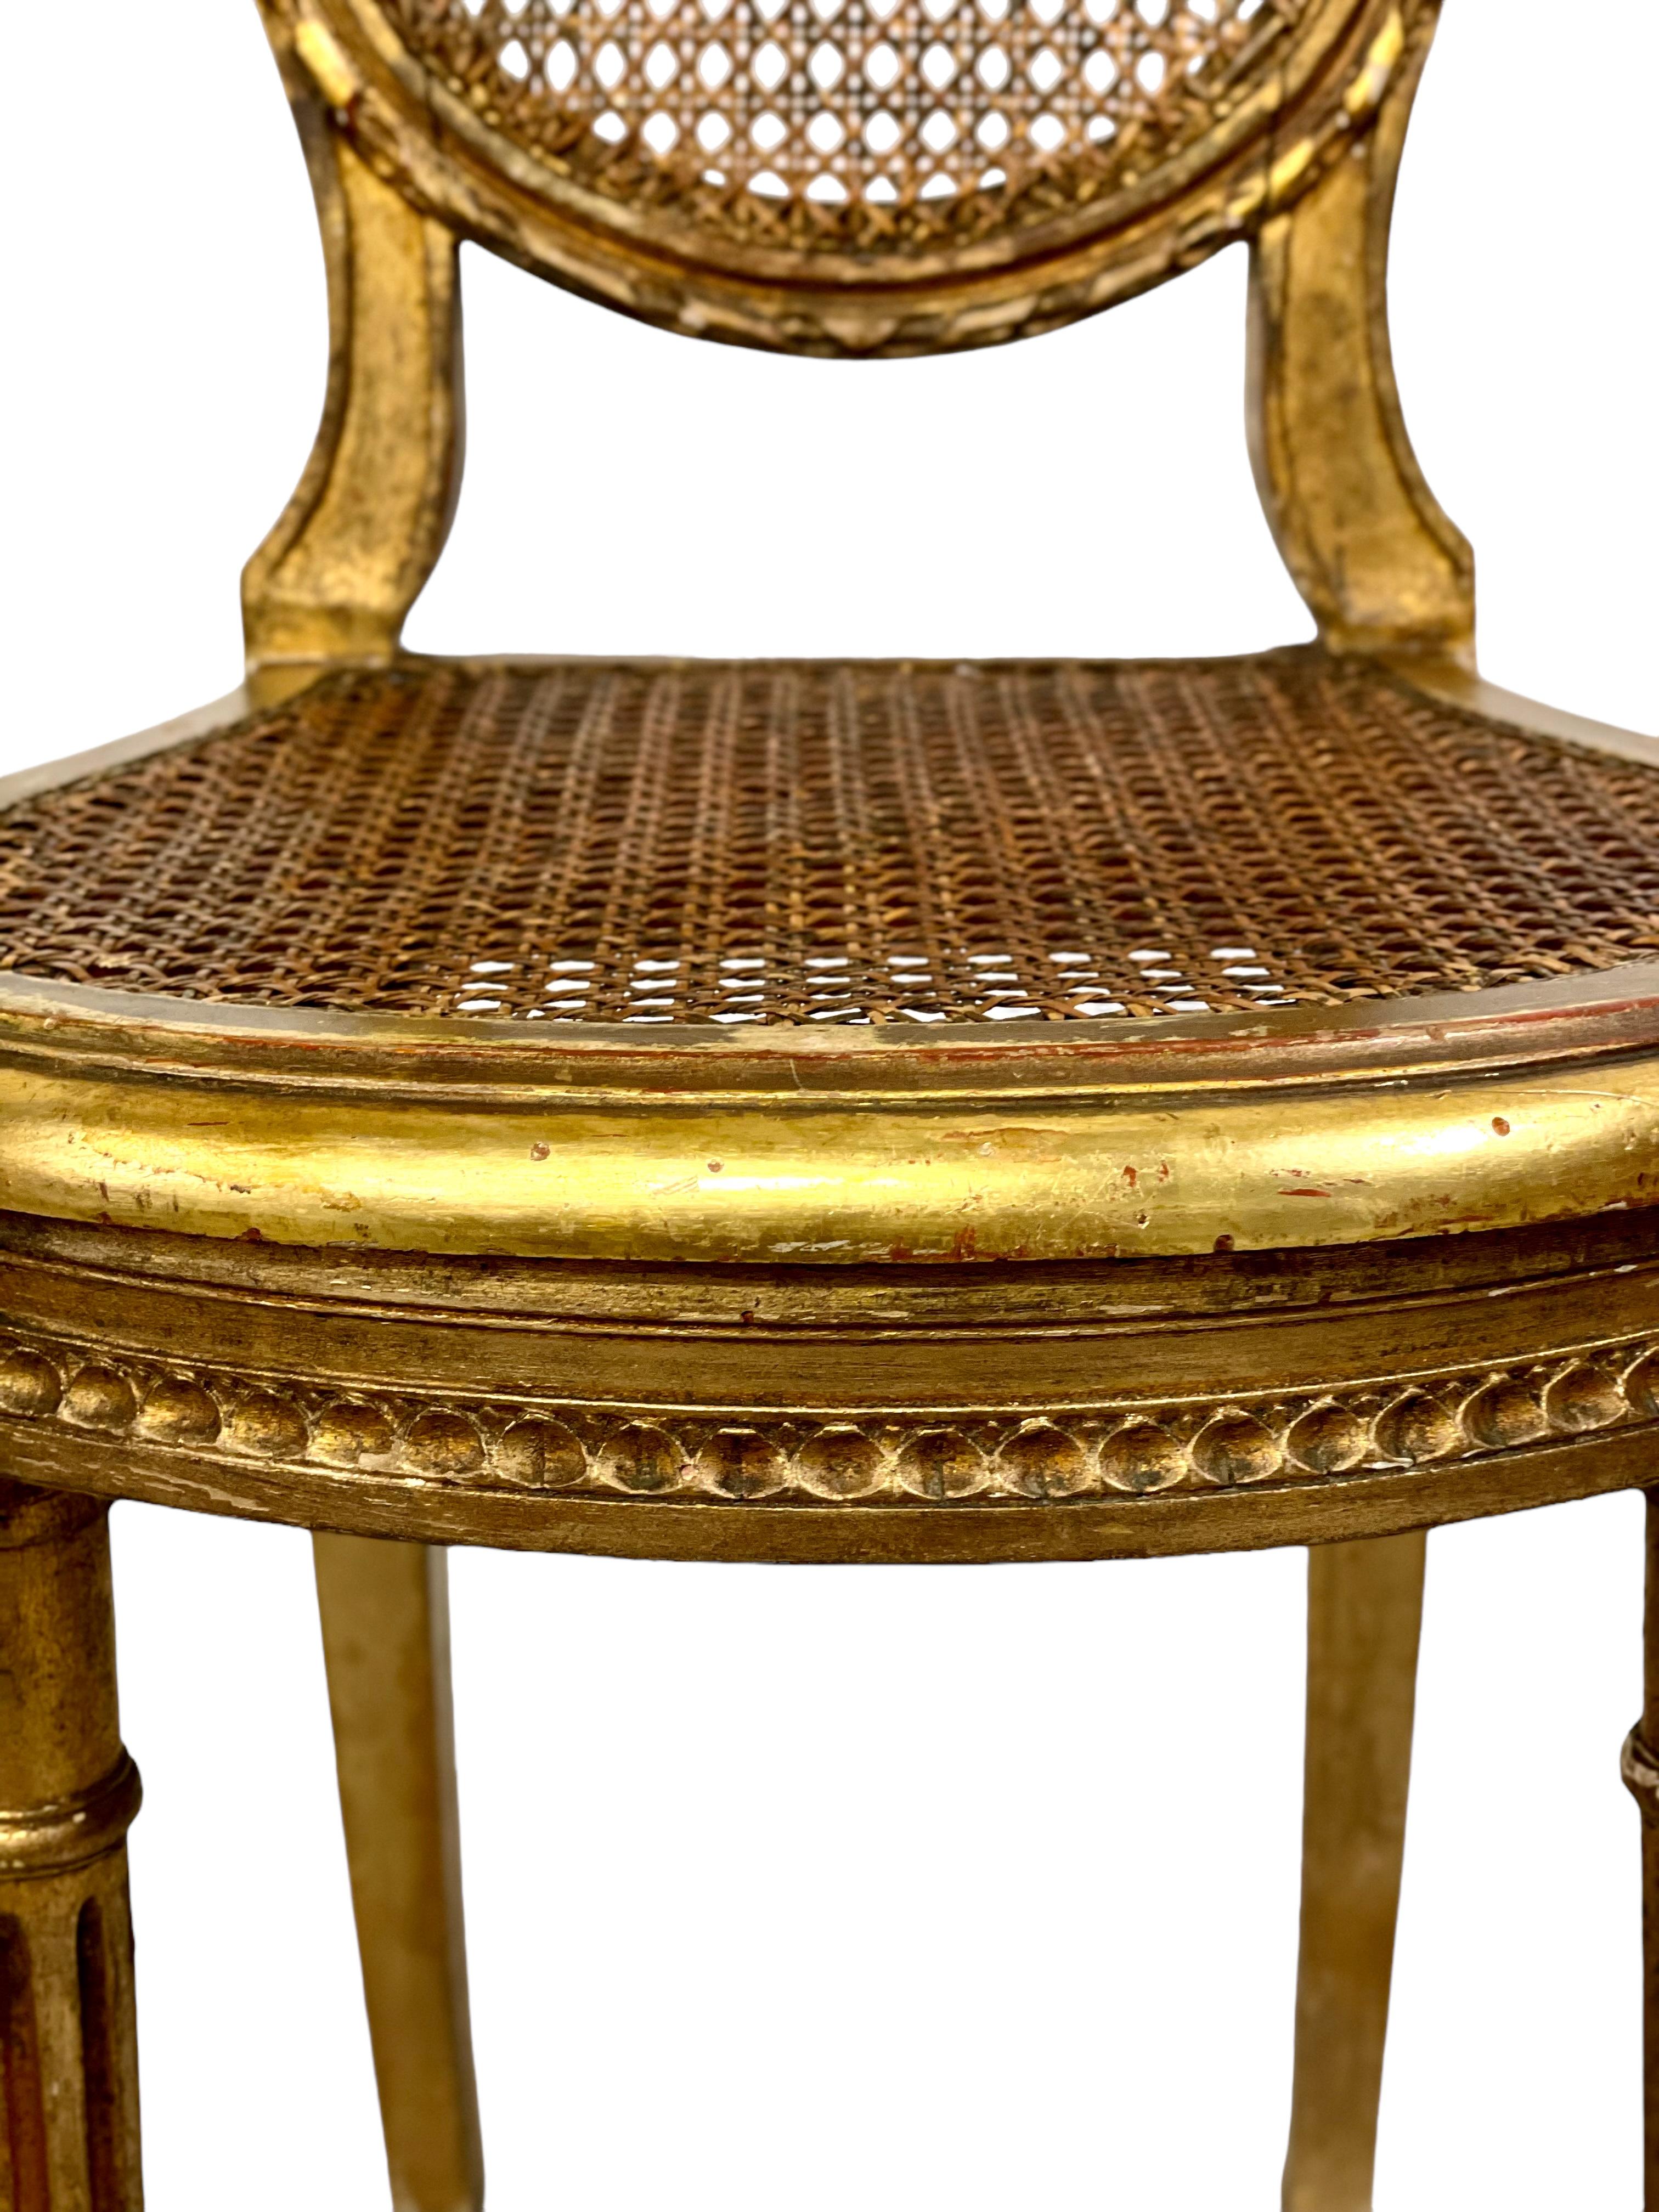 Ein passendes Paar exquisit vergoldeter Beistellstühle im Louis-XVI-Stil aus dem 19. Jahrhundert, mit leichten, ovalen Rückenlehnen und geformten, bequemen Sitzflächen. Die vorderen Beine sind schlank und geschnitzt, mit kannelierten Mustern entlang